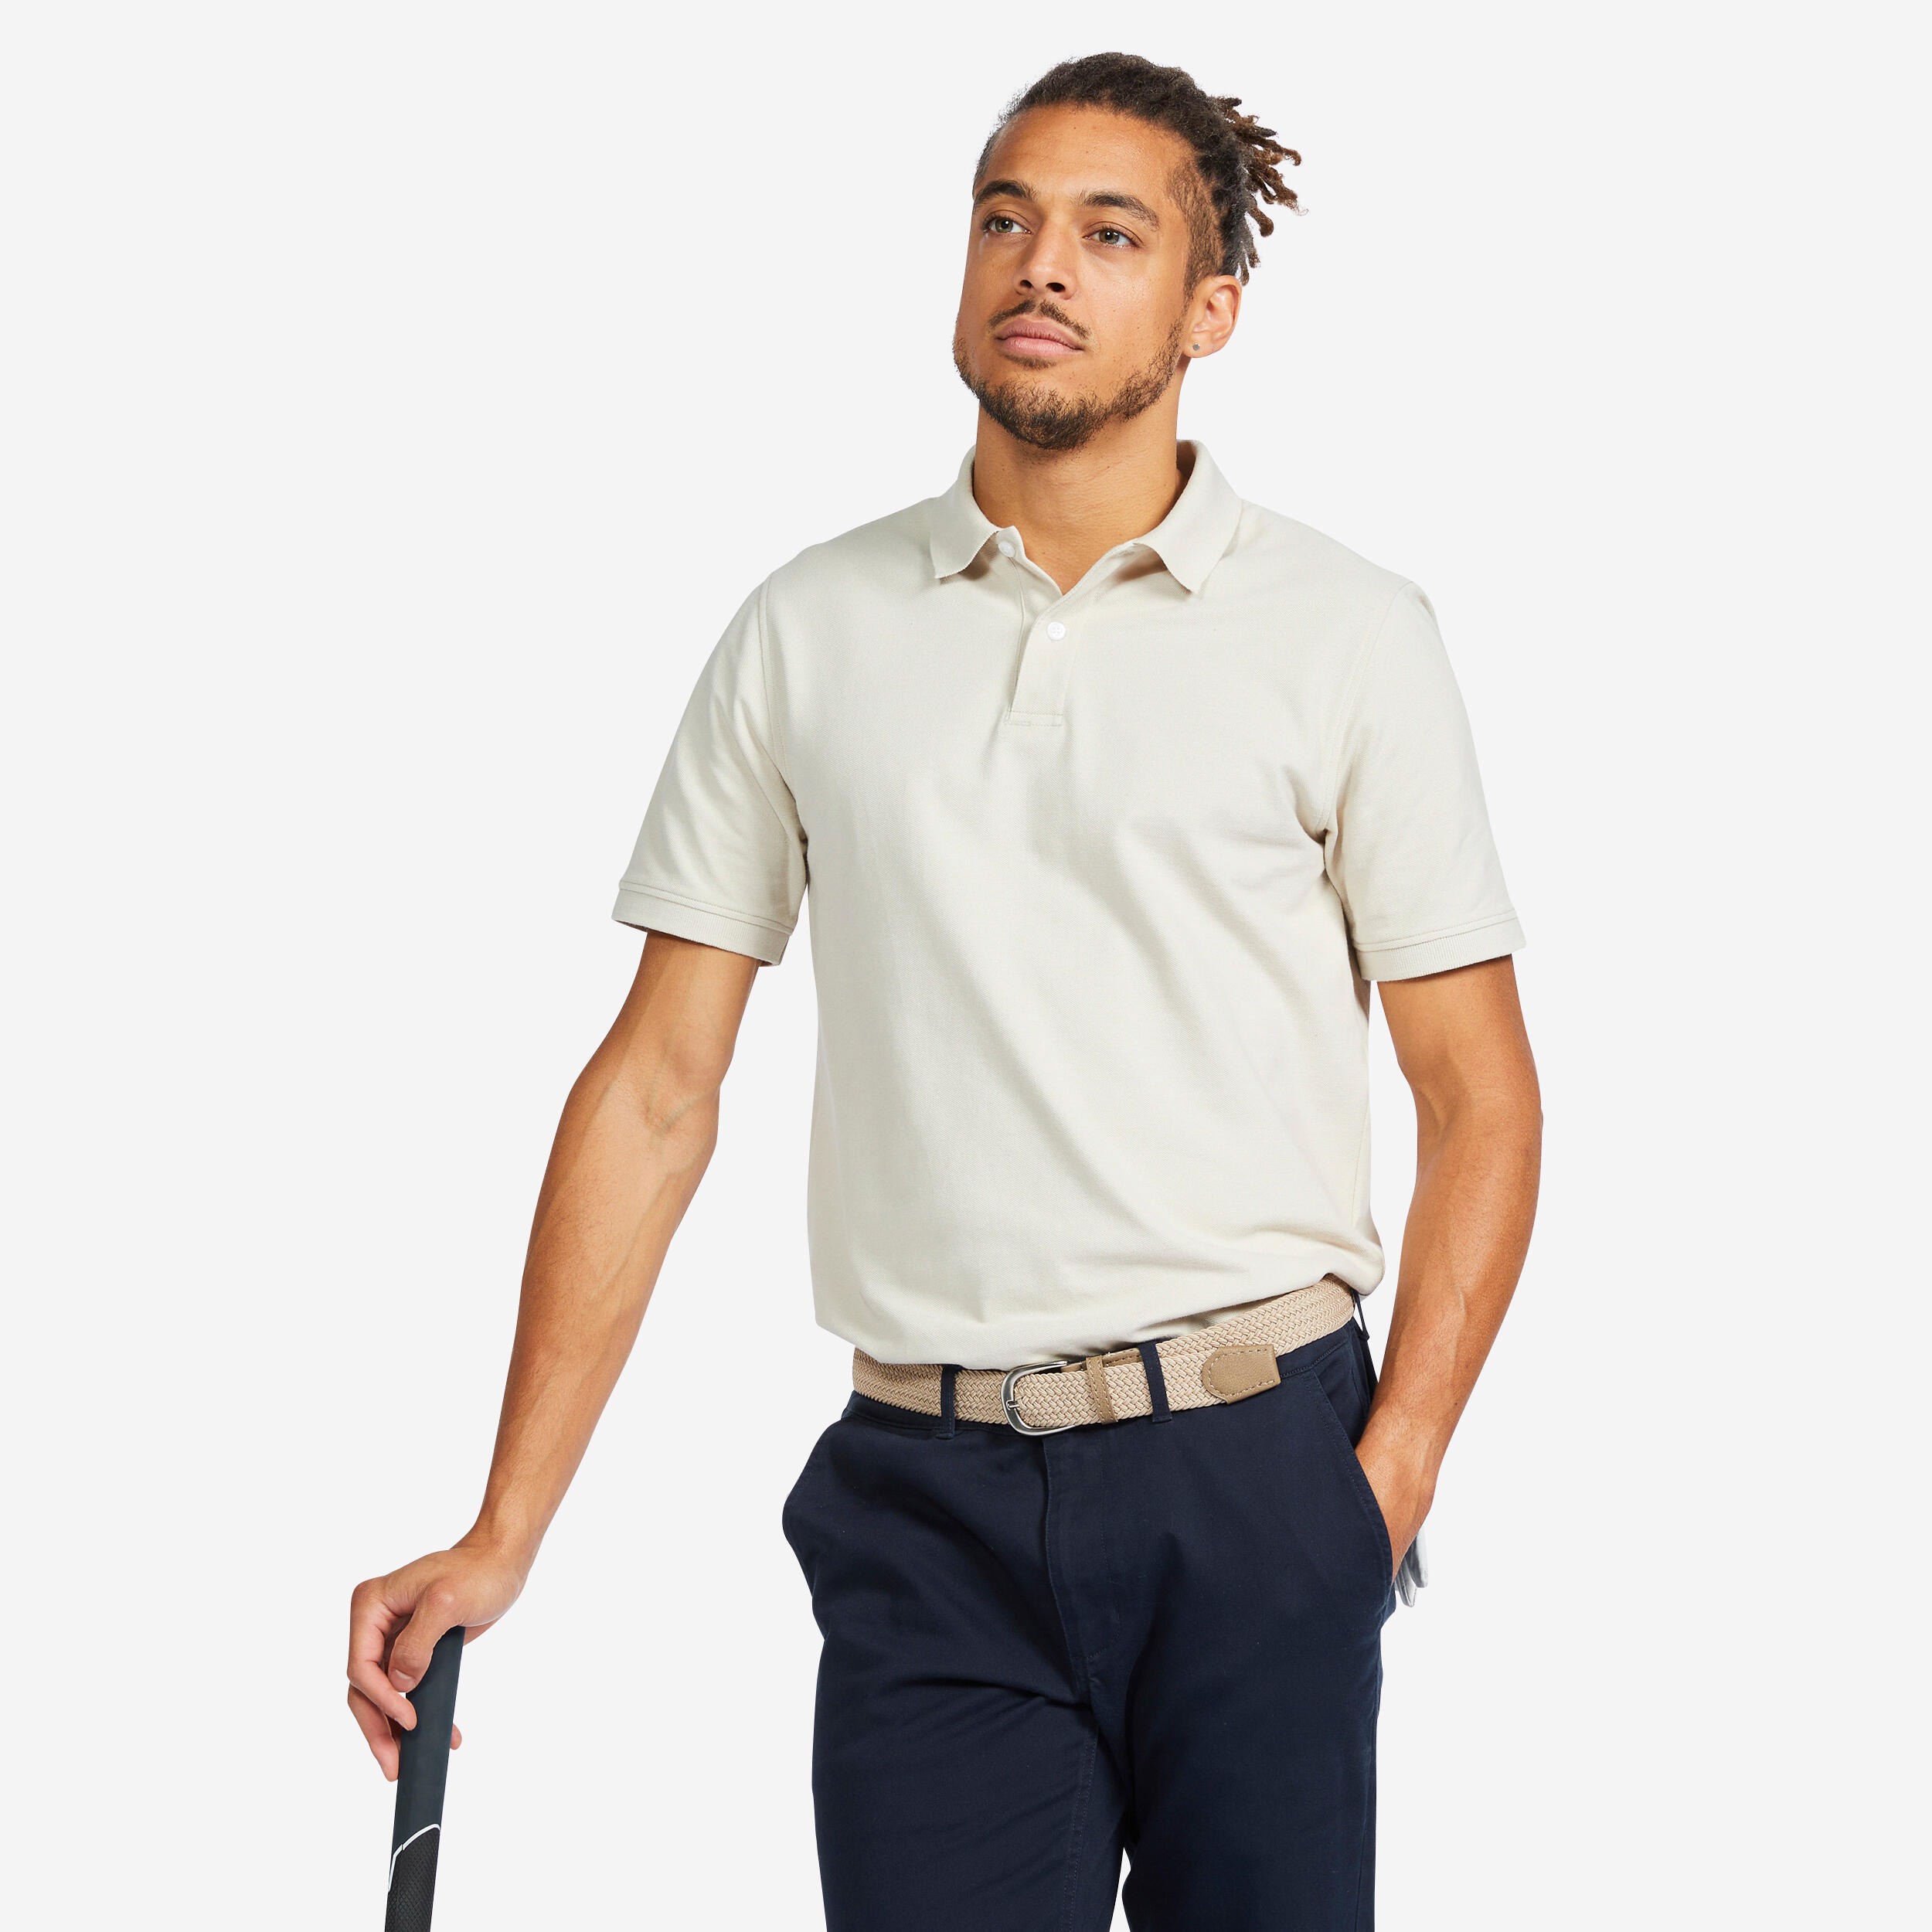 Men's short-sleeved golf polo shirt - MW500 linen 1/5